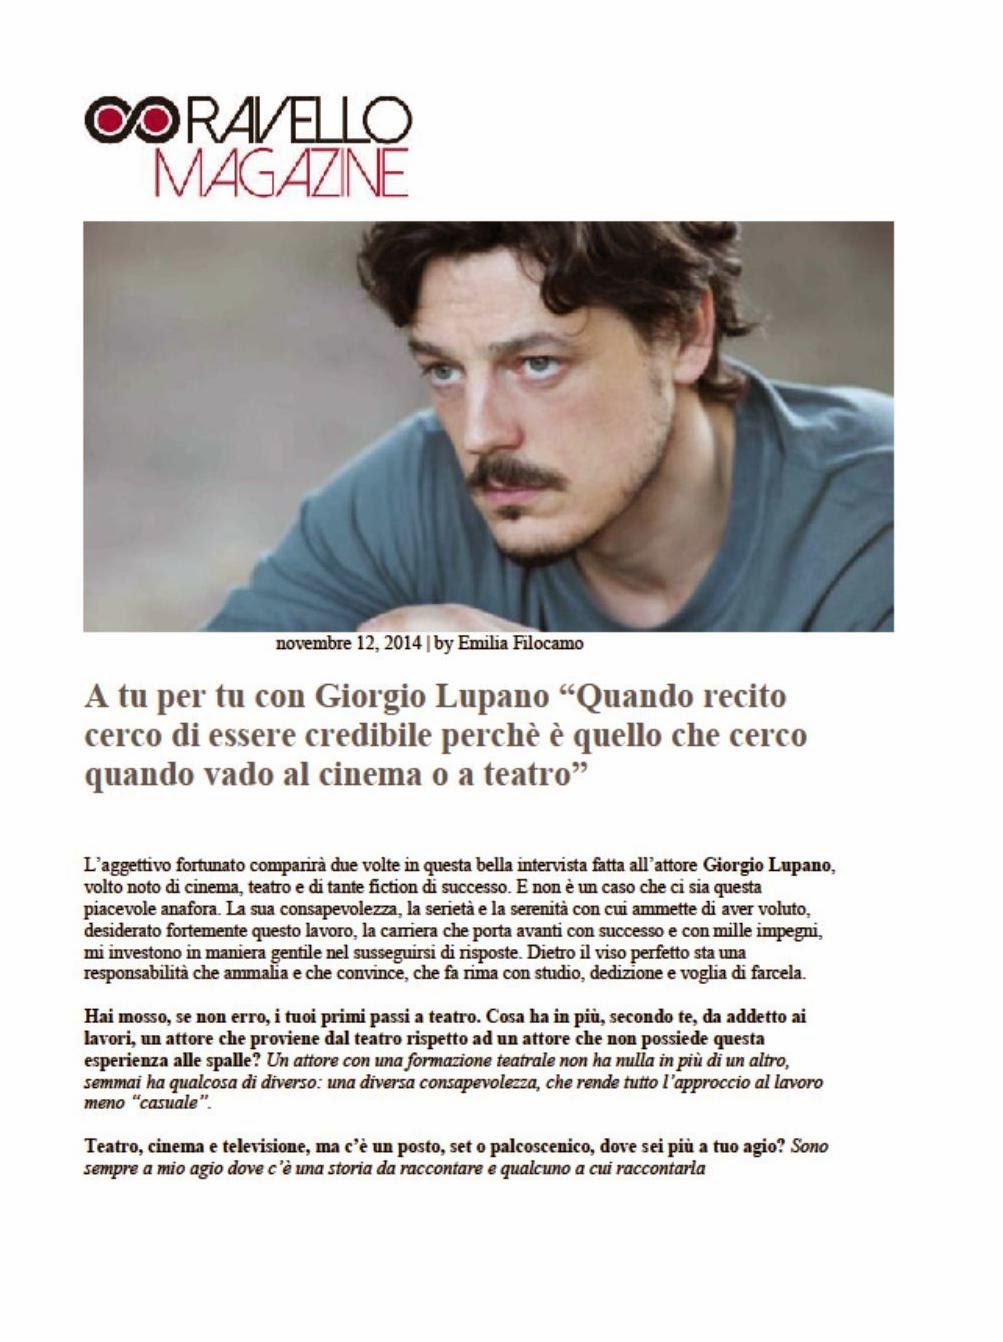 Giorgio Lupano Blog Ufficiale Ravello Magazine A Tu Per Tu Con Giorgio Lupano